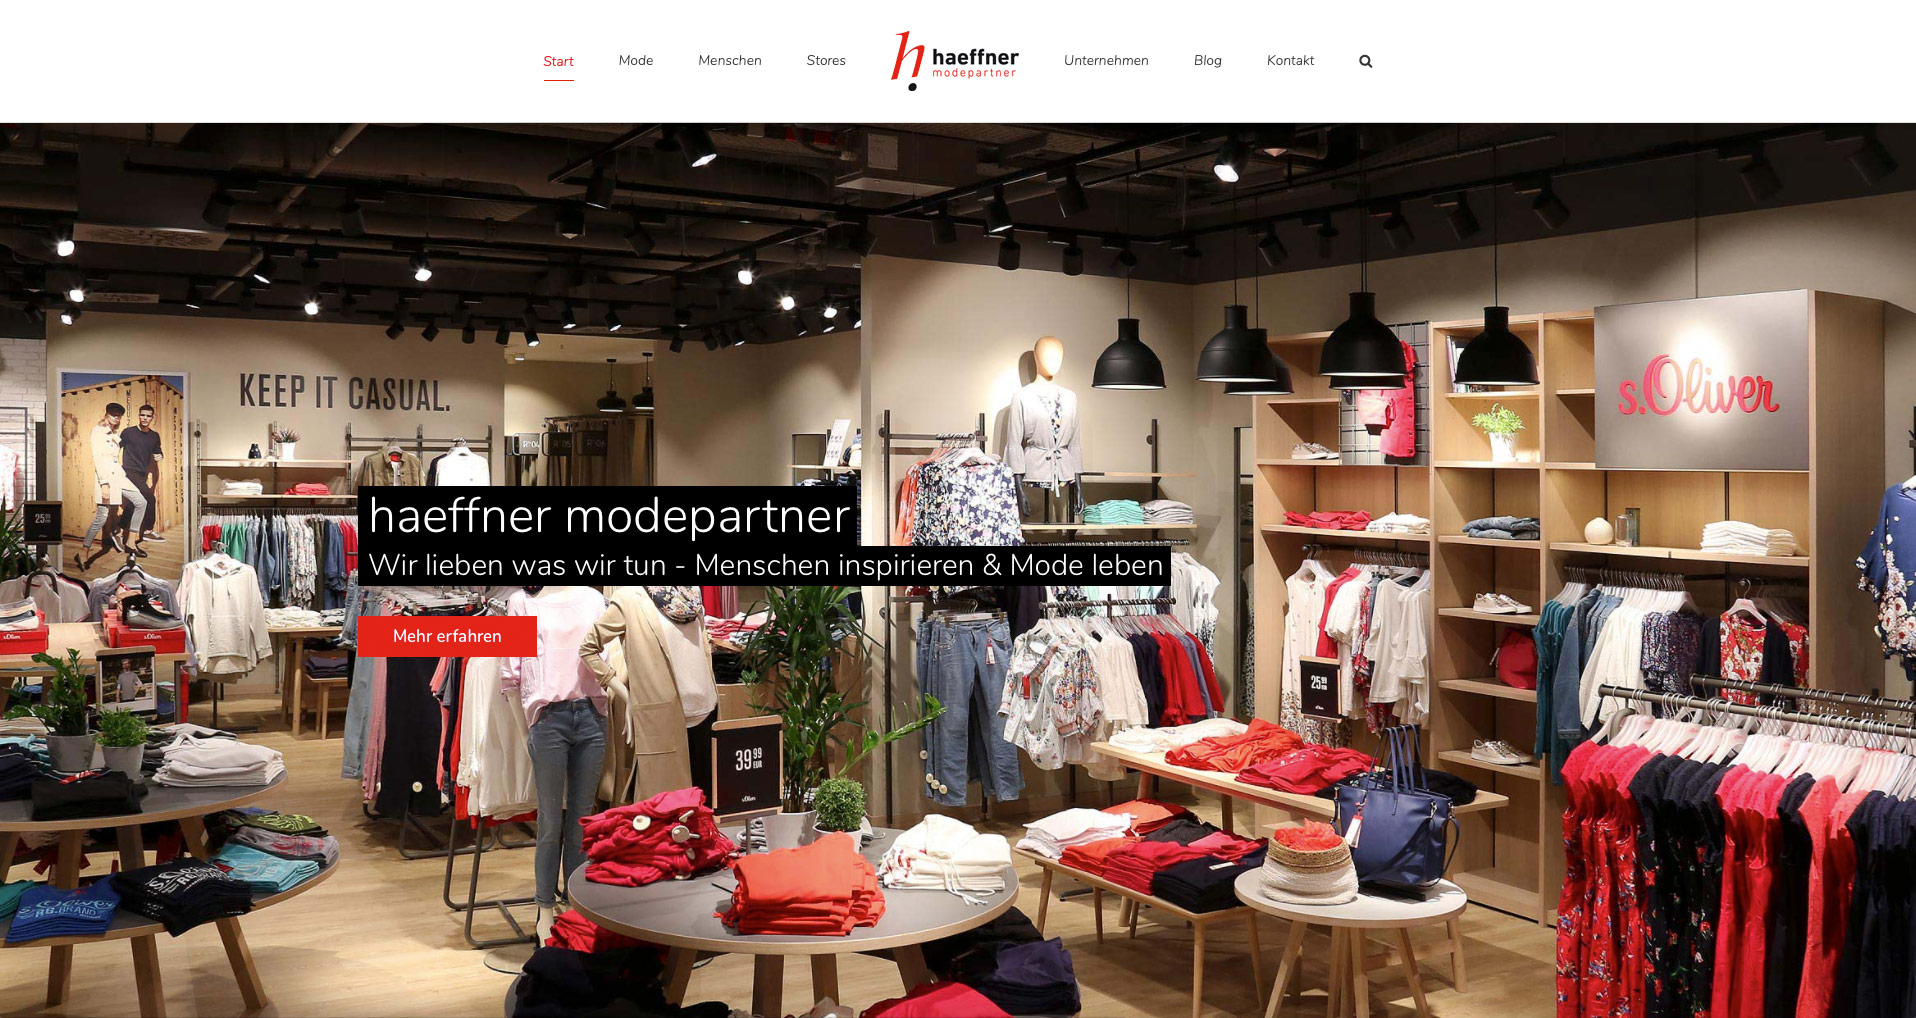 P1XEL - WordPress Internetseite für die Firma Modepartner Häffner, die in Heilbronn und Ludwigsburg mehrere Bekleidungsgeschäfte führt